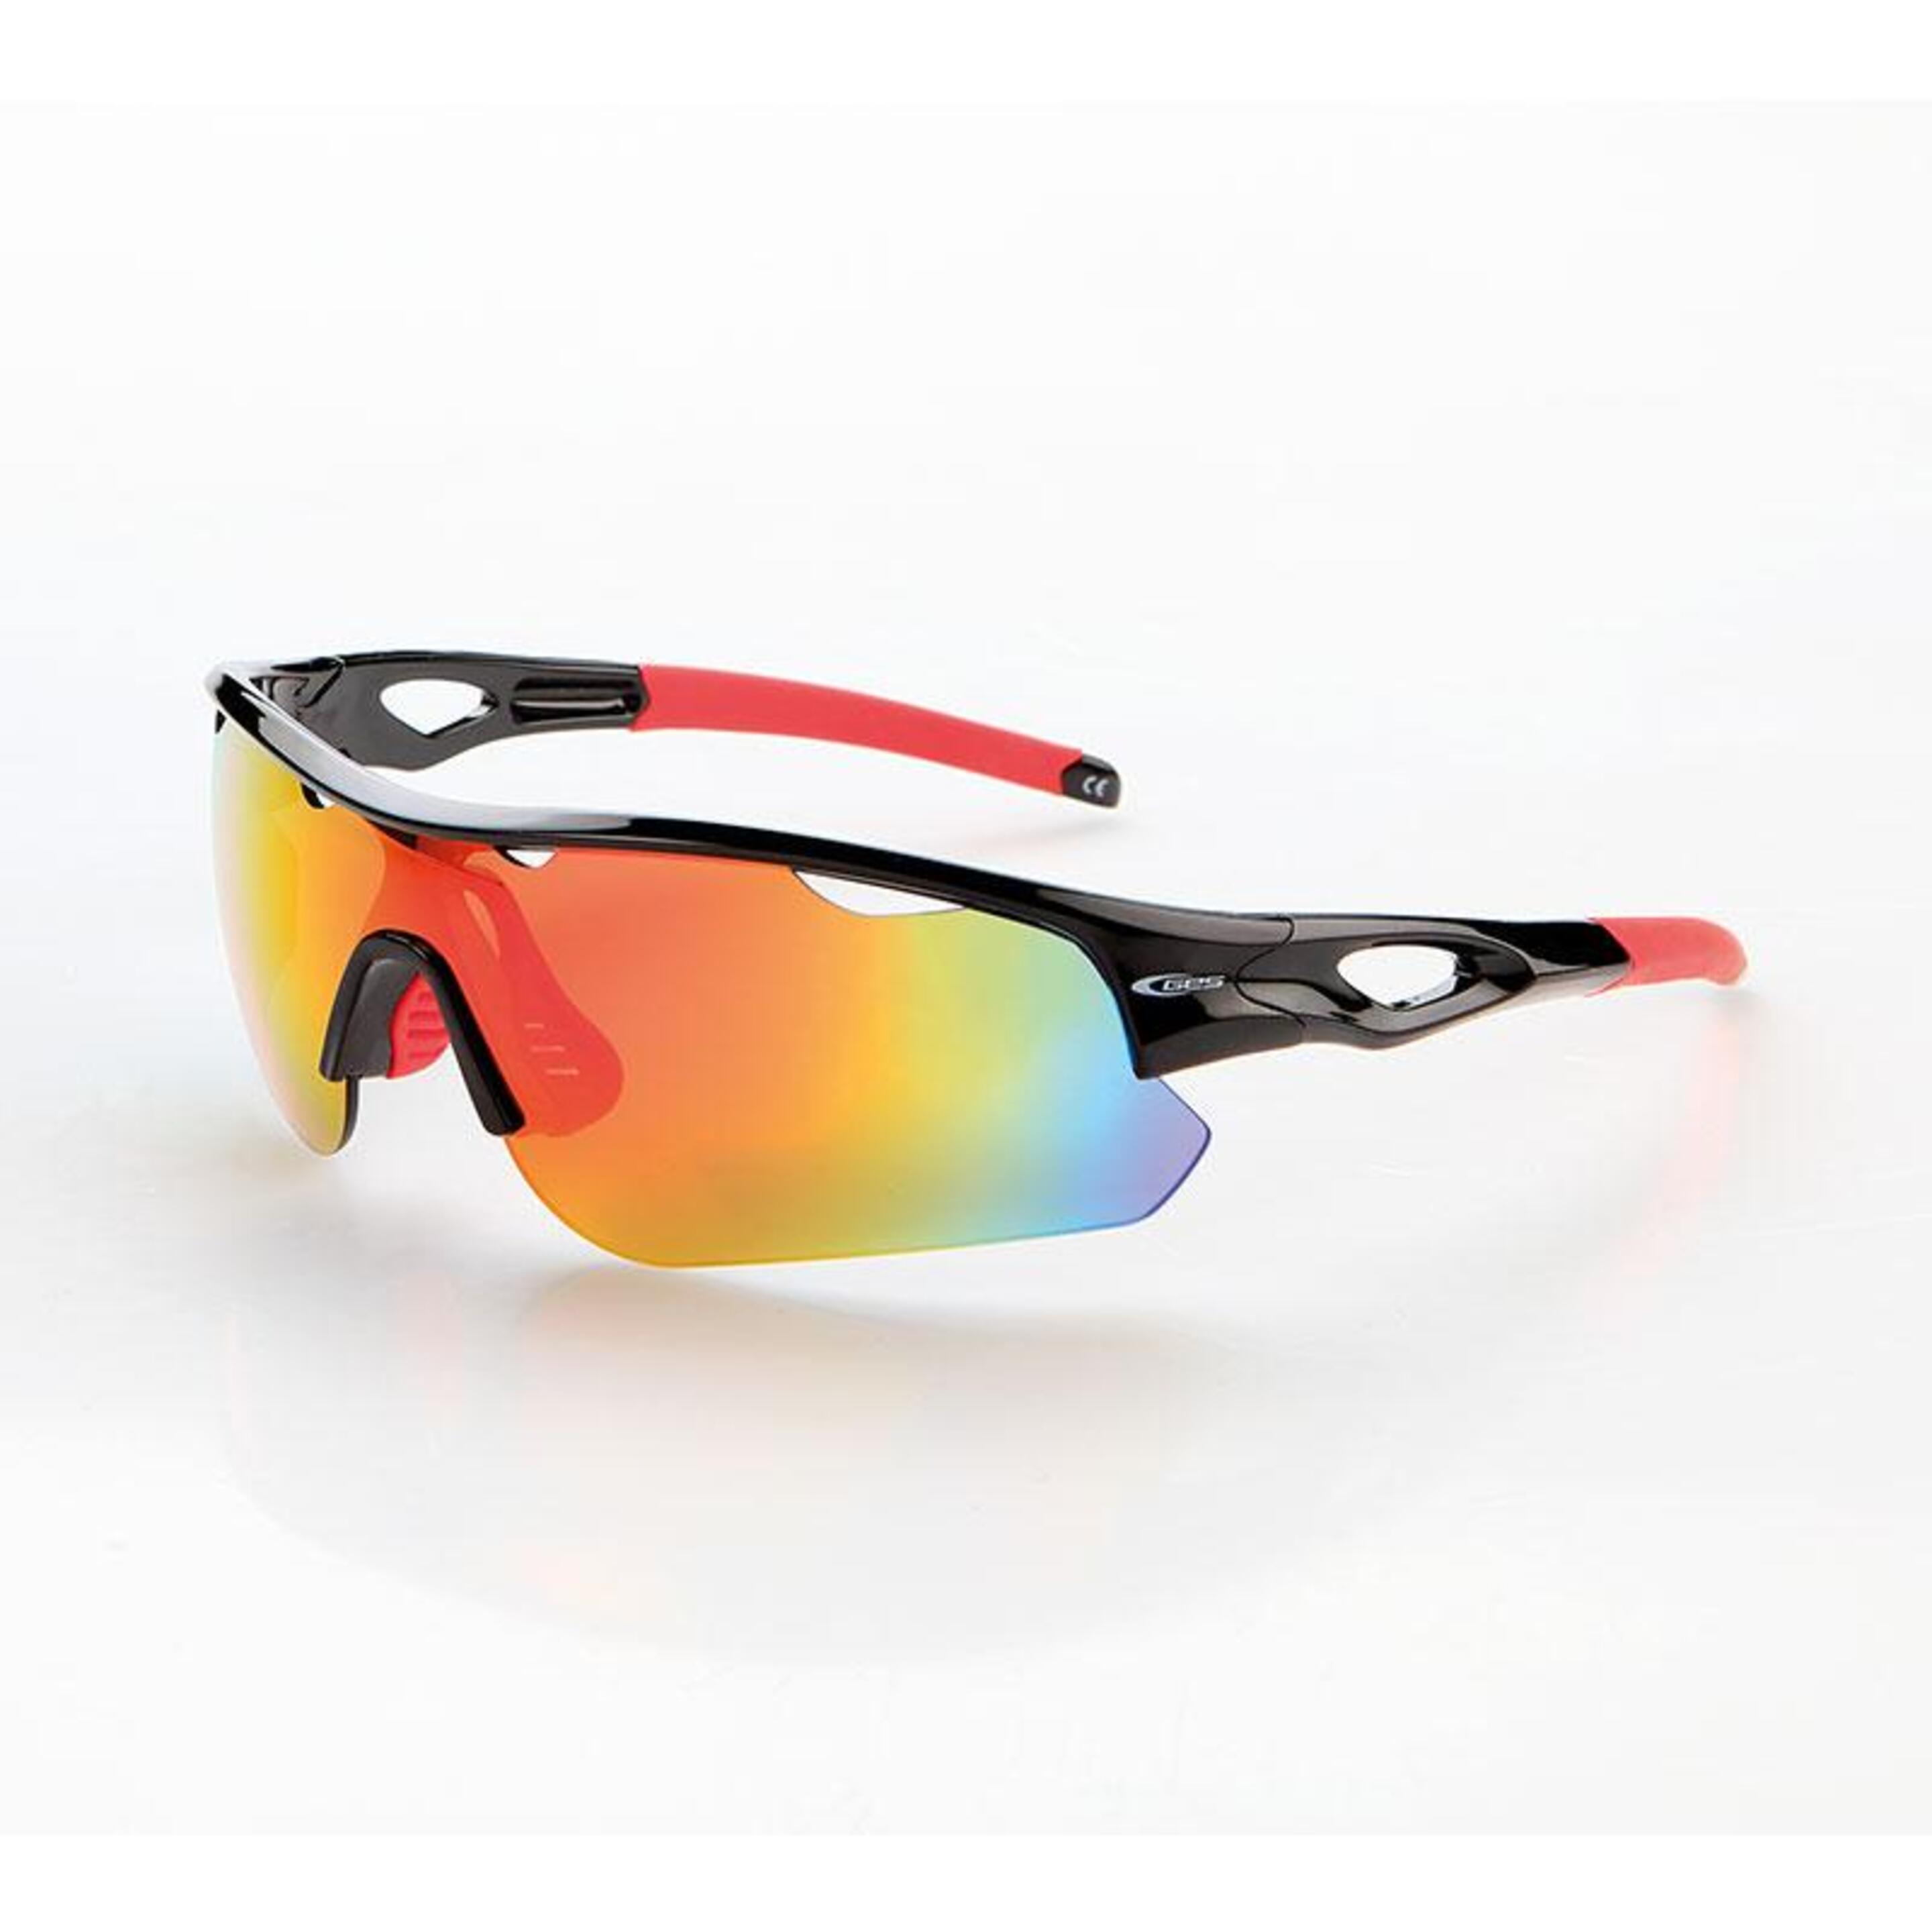 Gafas Ges 3 Lentes - Negro/Rojo - Ciclismo Y Running  MKP